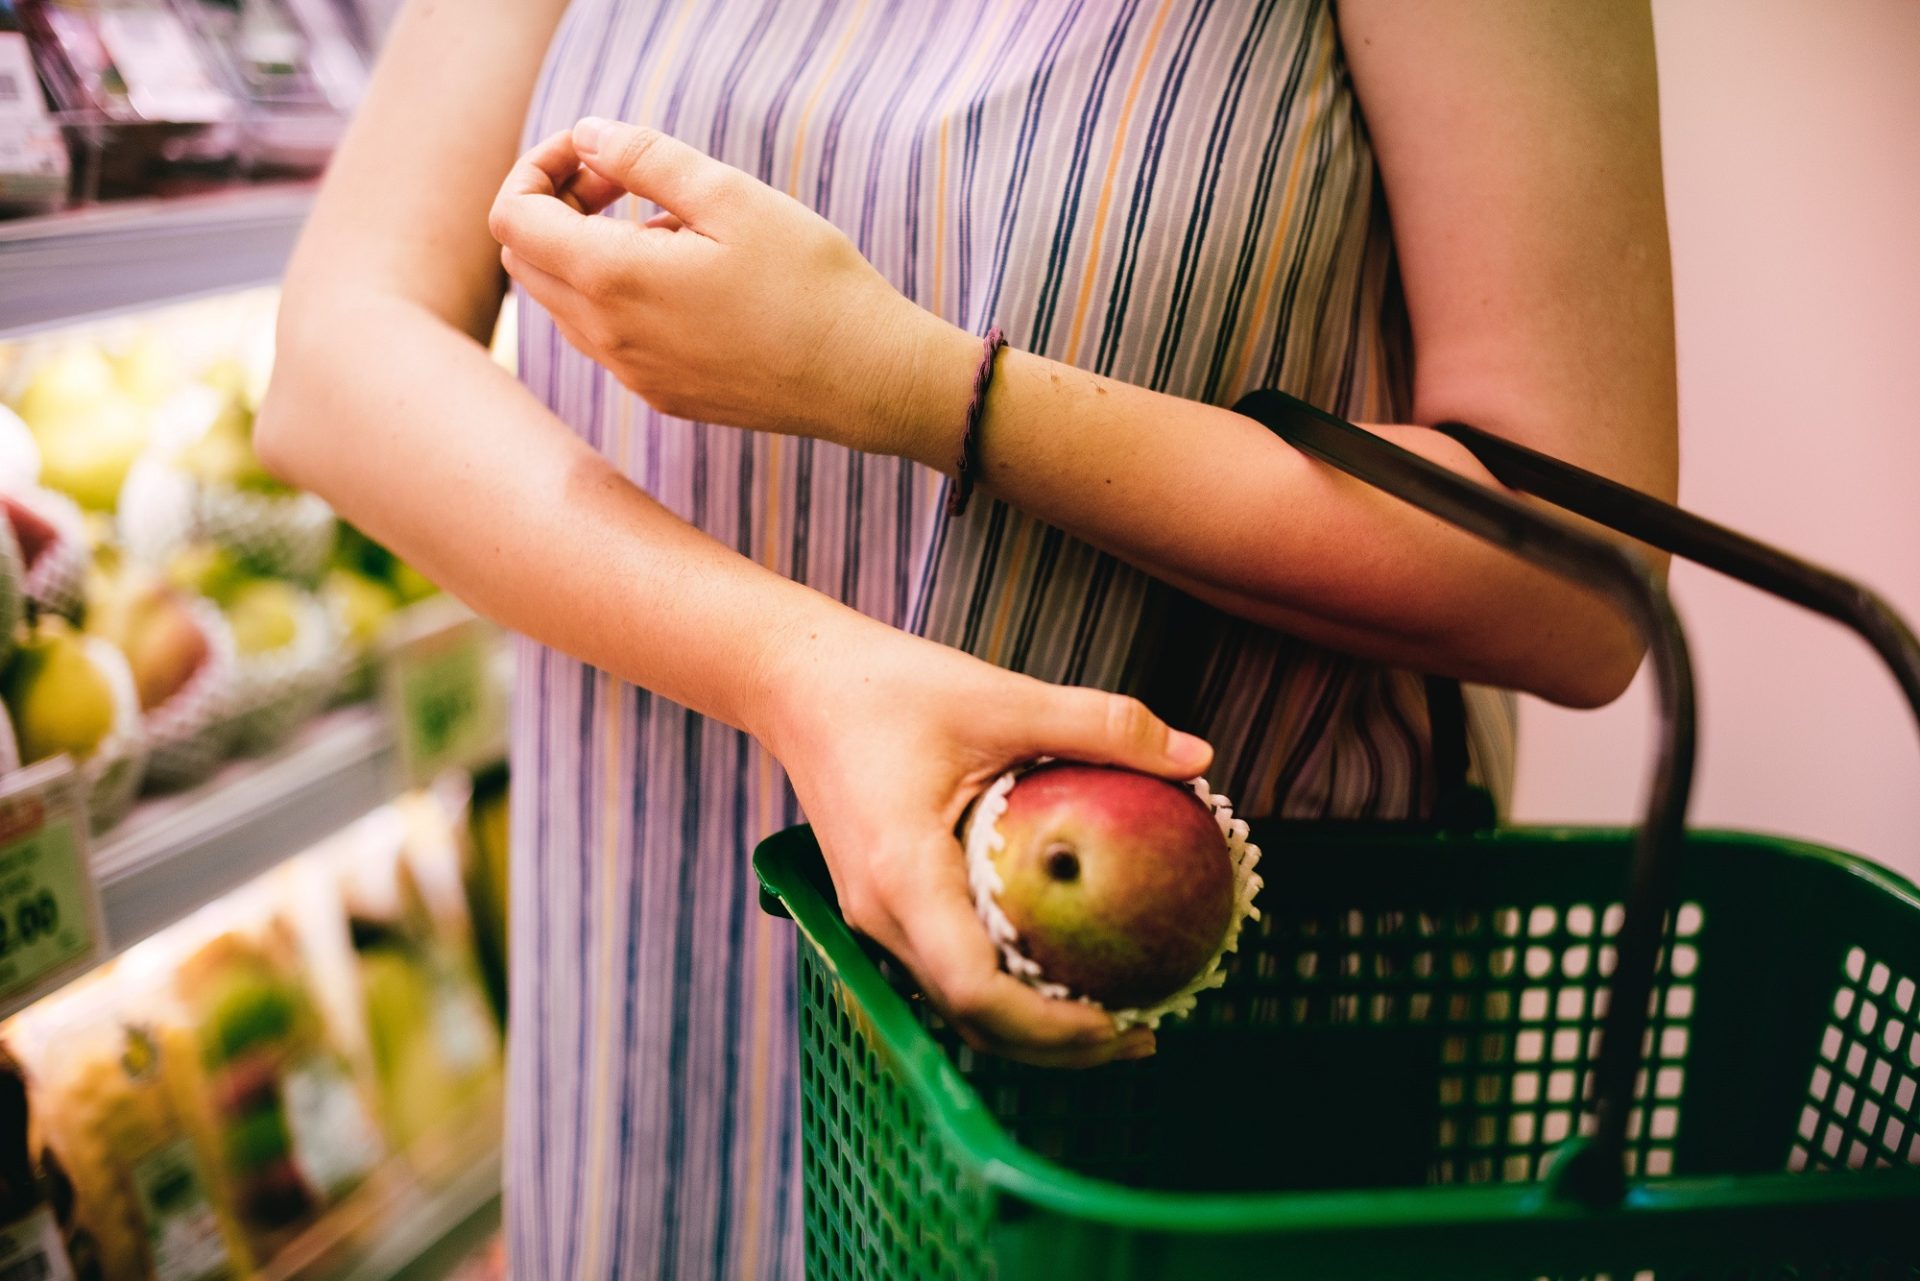 Una mujer deja una manzana en su canasto de la compra.